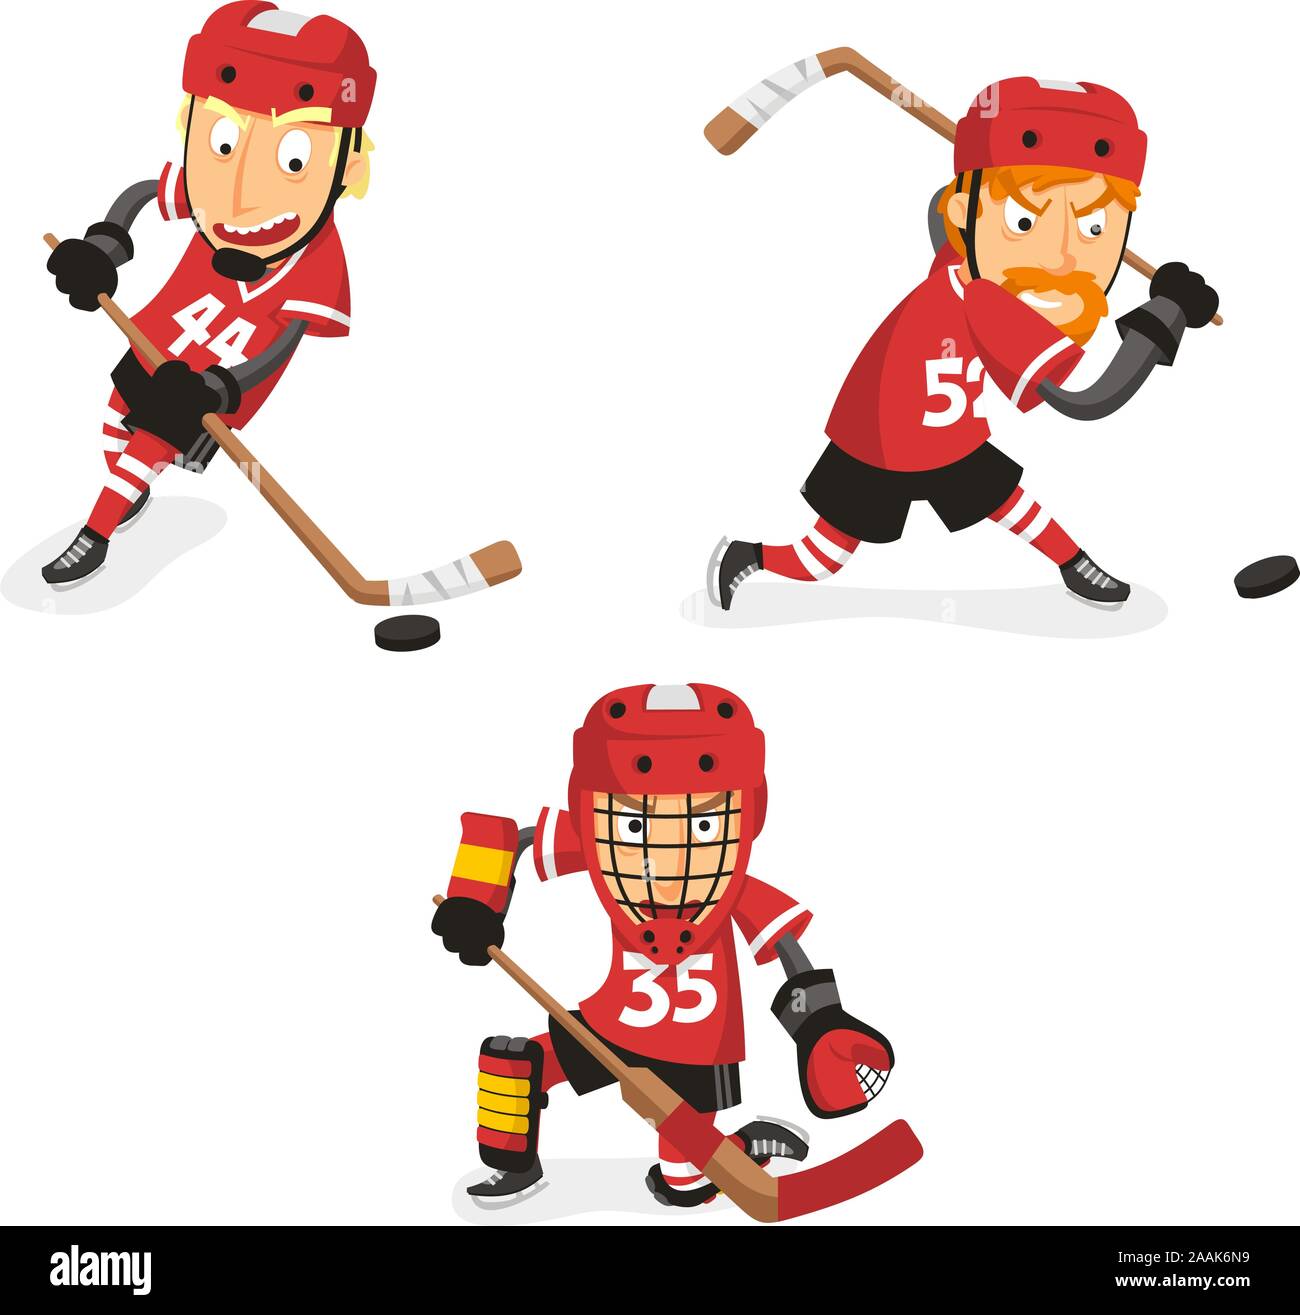 De Hockey sur glace en action, avec le joueur de hockey dans trois positions différentes. Vector illustration cartoon. Illustration de Vecteur